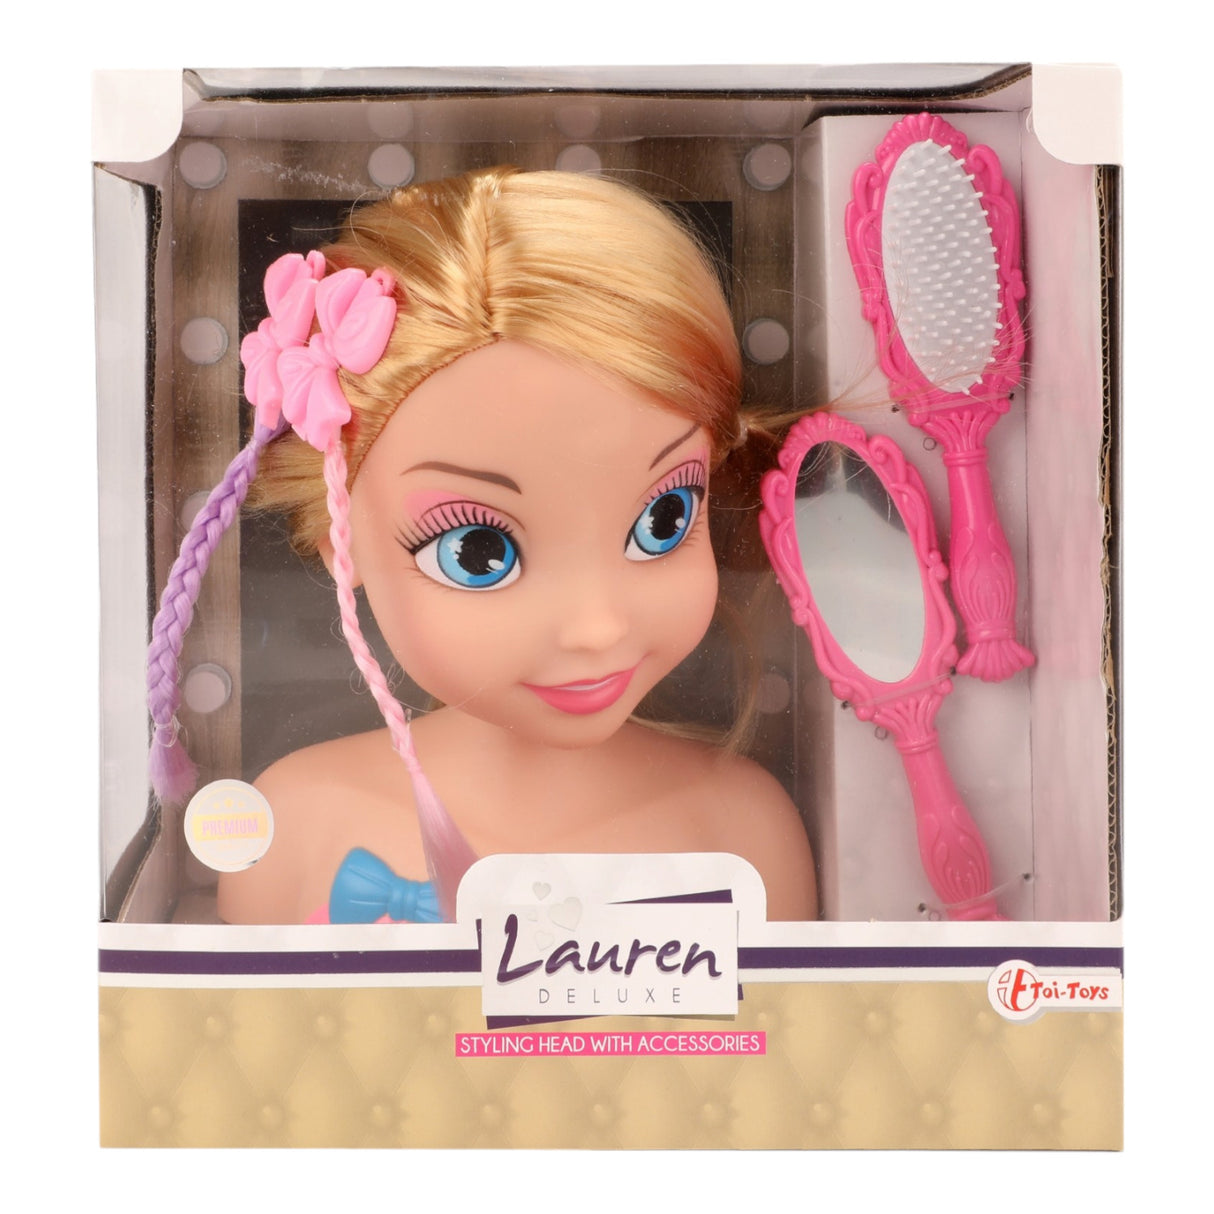 Spielzeug Schminkkopf für Mädchen Styling Spiel mit Haarbürste und Handspiegel